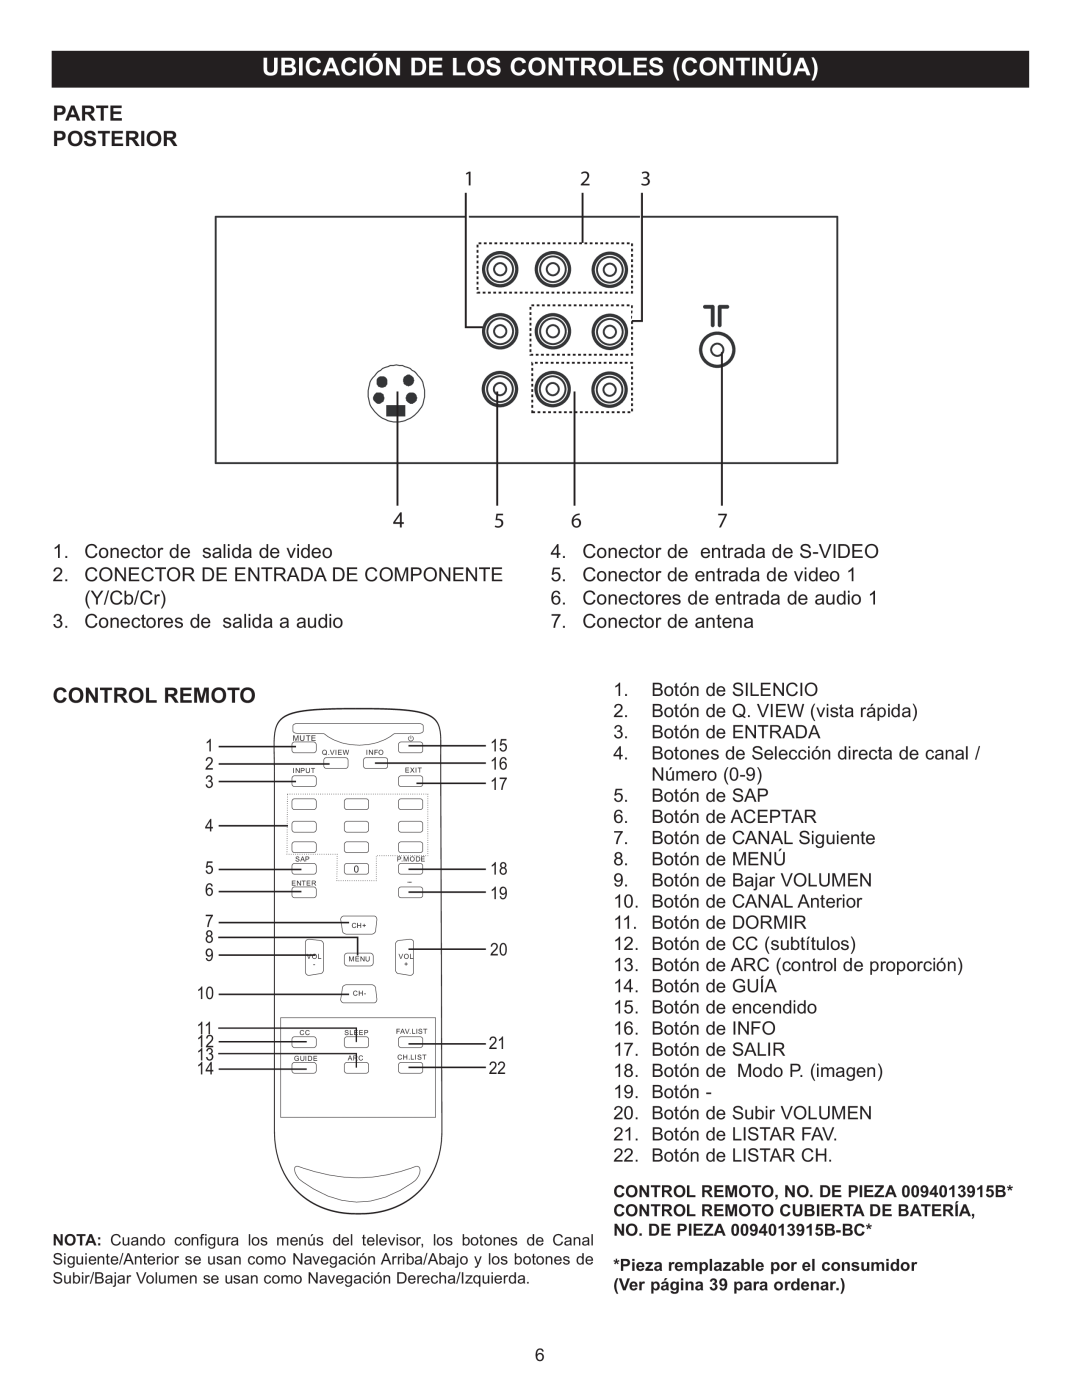 Memorex MT2028D-BLK manual Parte Posterior, Control Remoto, Conector de salida de video, Conectores de salida a audio 